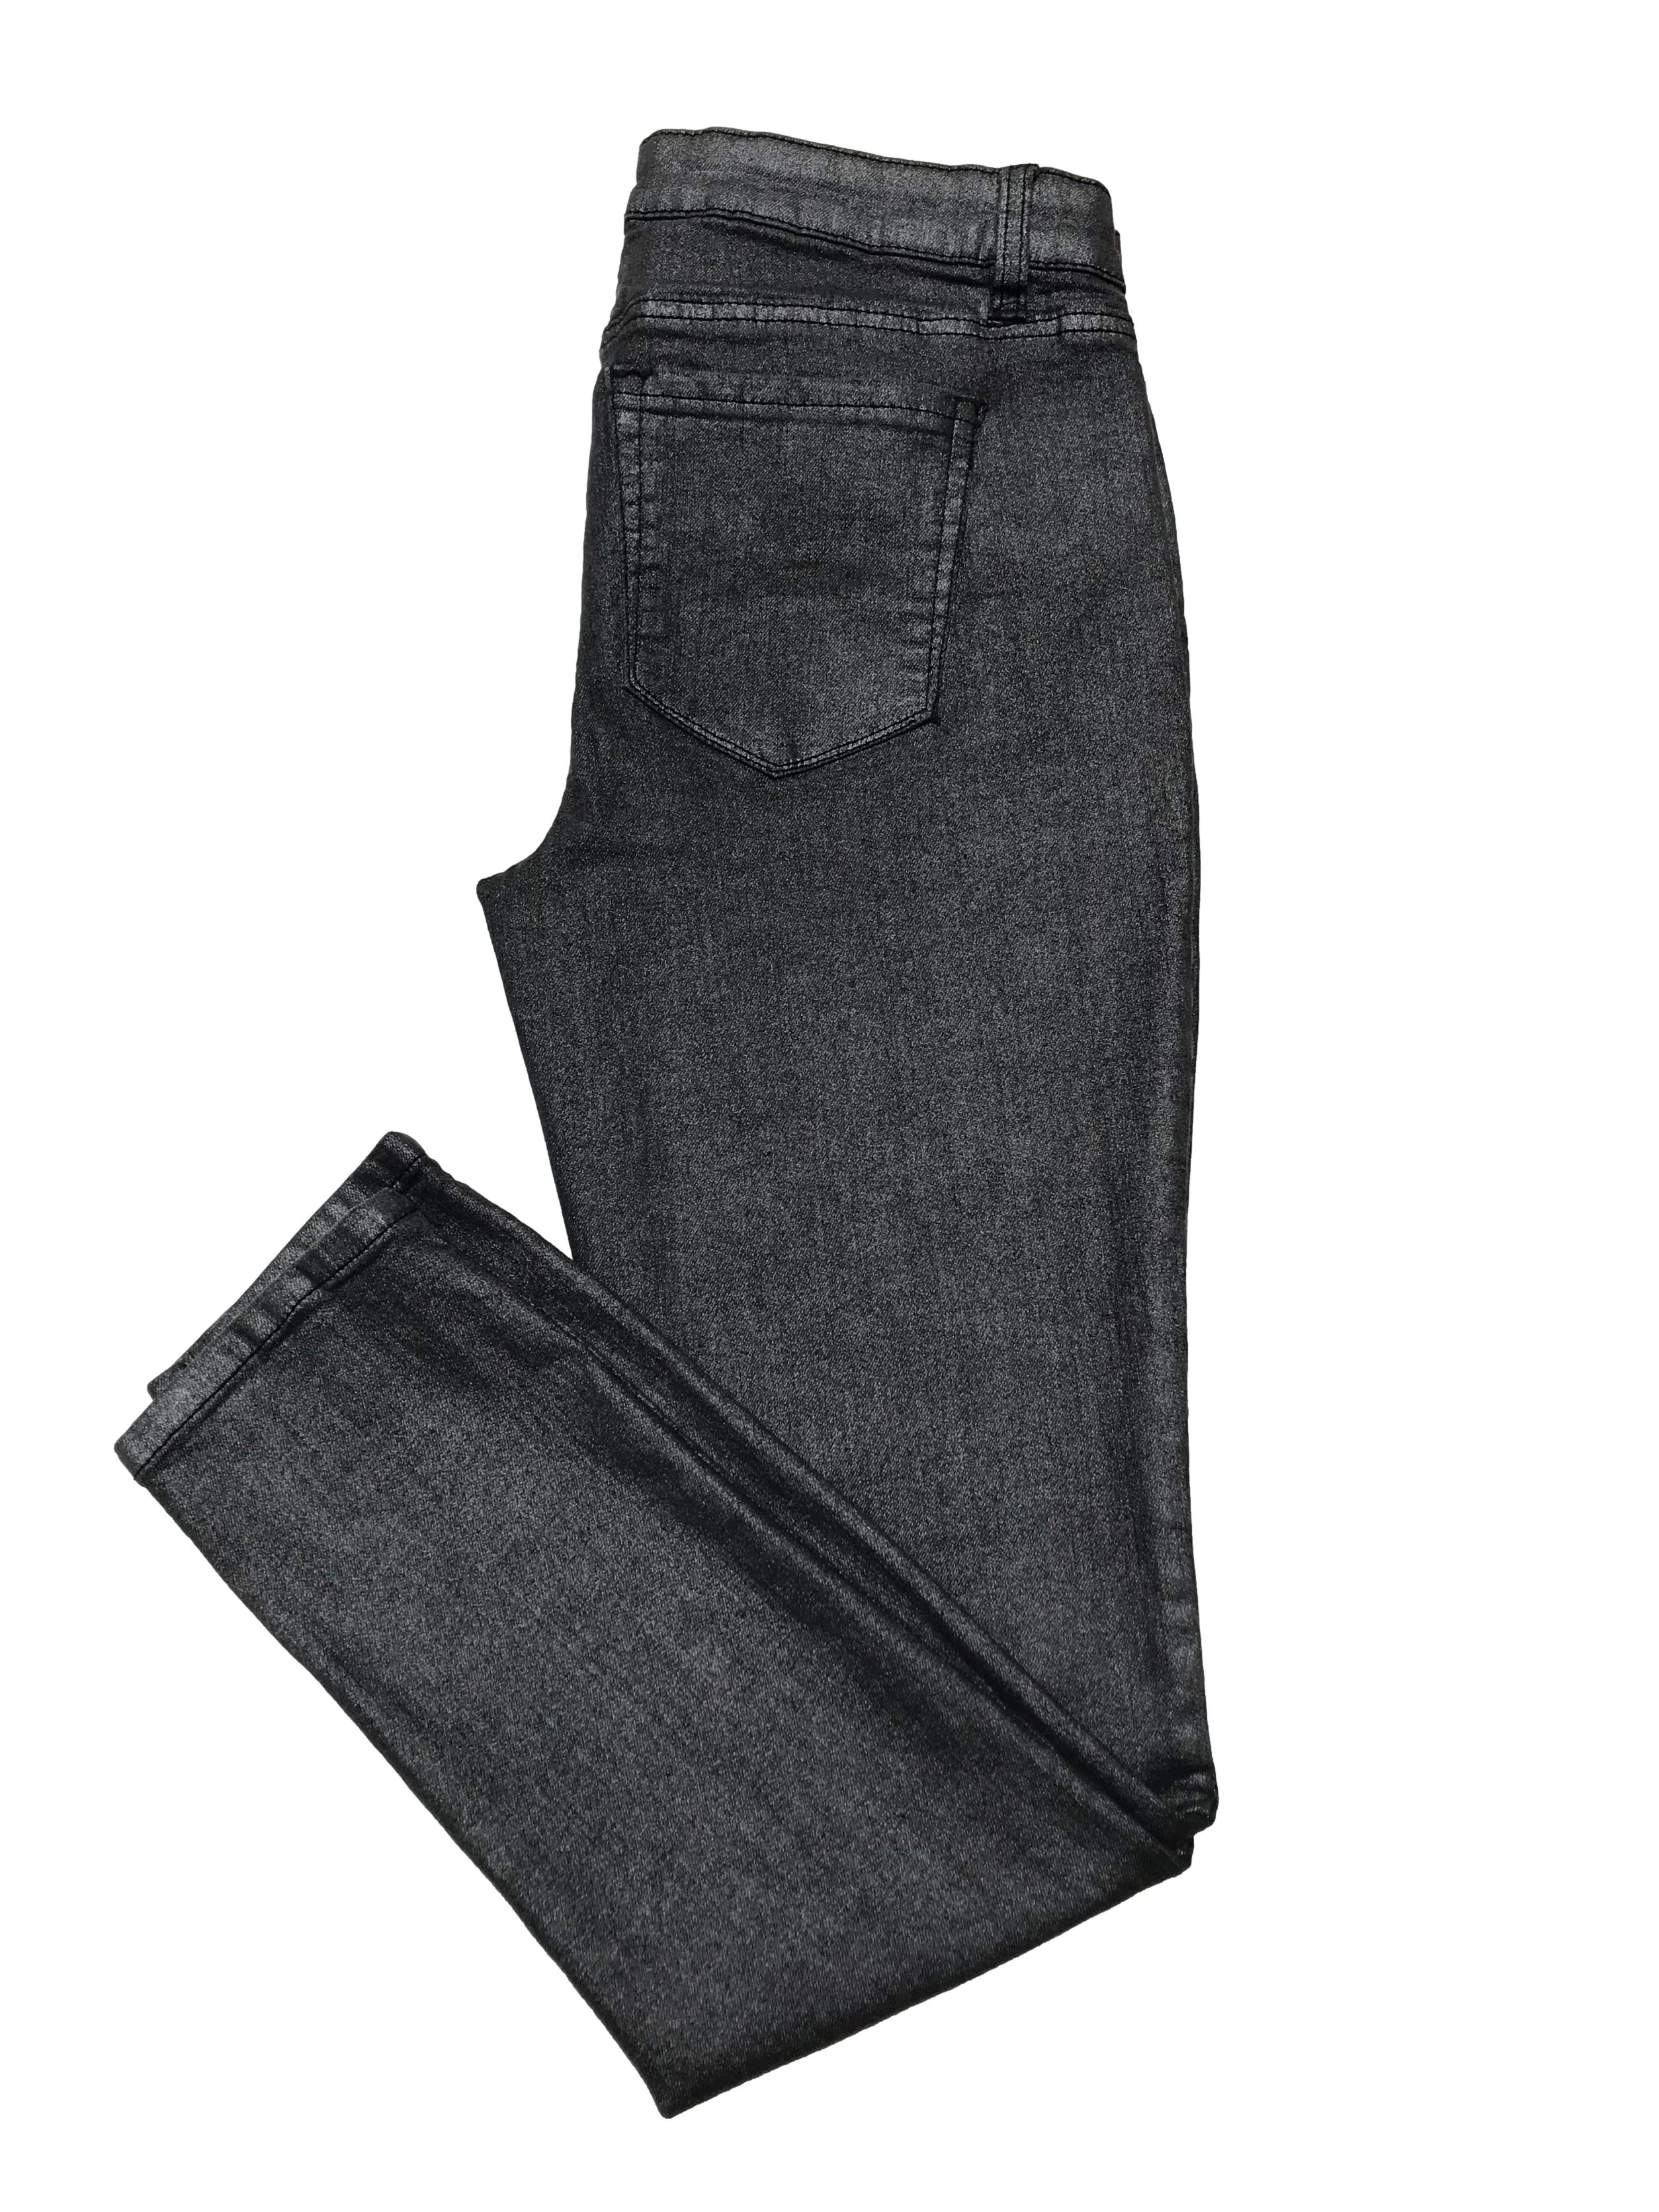 Skinny jean efecto metalizado sretch, modelo mid rise five pockets. Cintura 76cm si estirar Largo 95cm. Precio orignal S/ 165